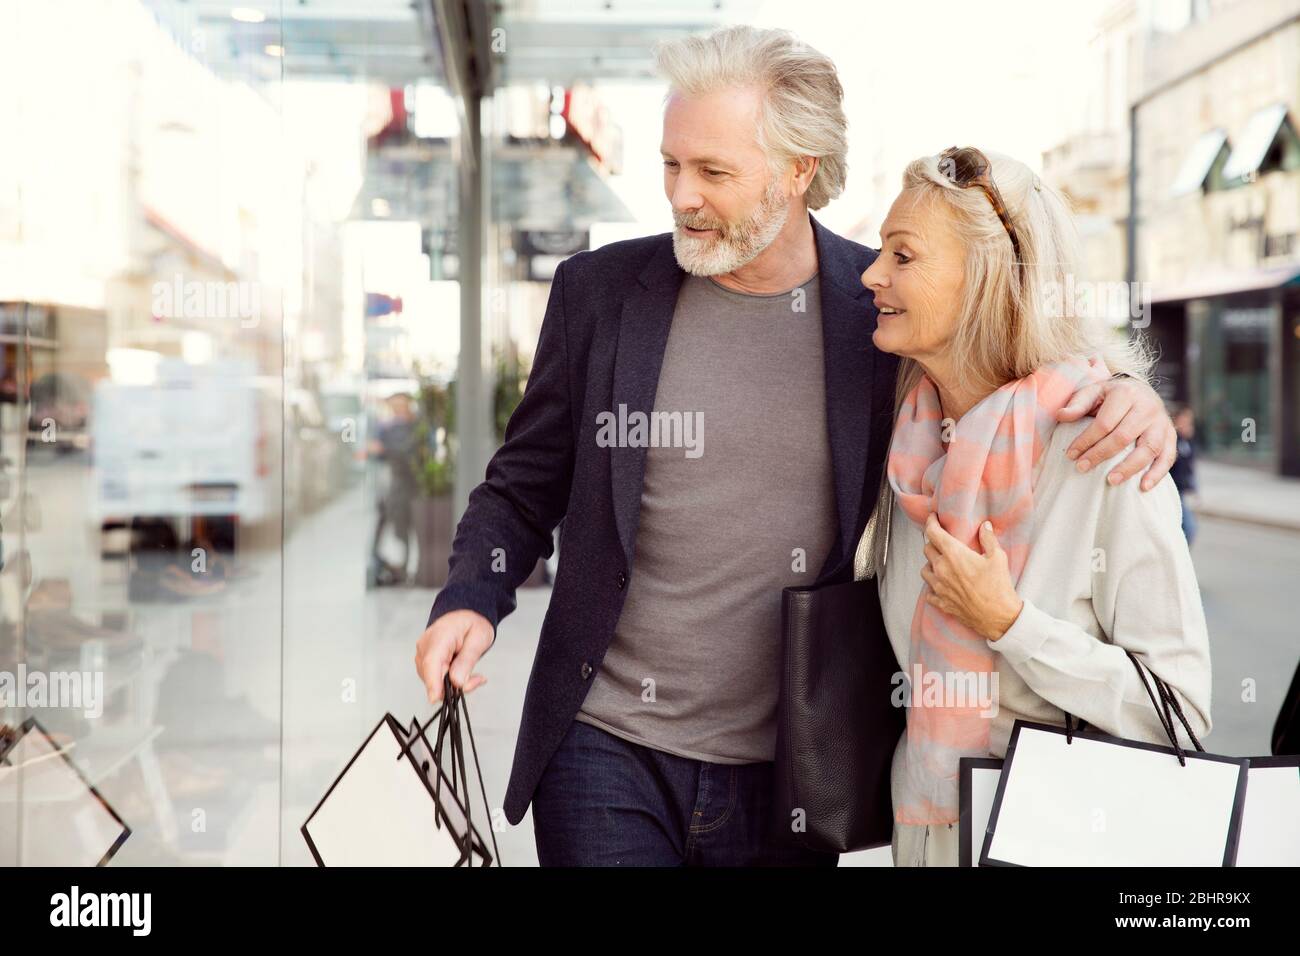 Ein Paar mit Armen um sich herum, das Einkaufstaschen trägt und in ein Schaufenster schaut. Stockfoto